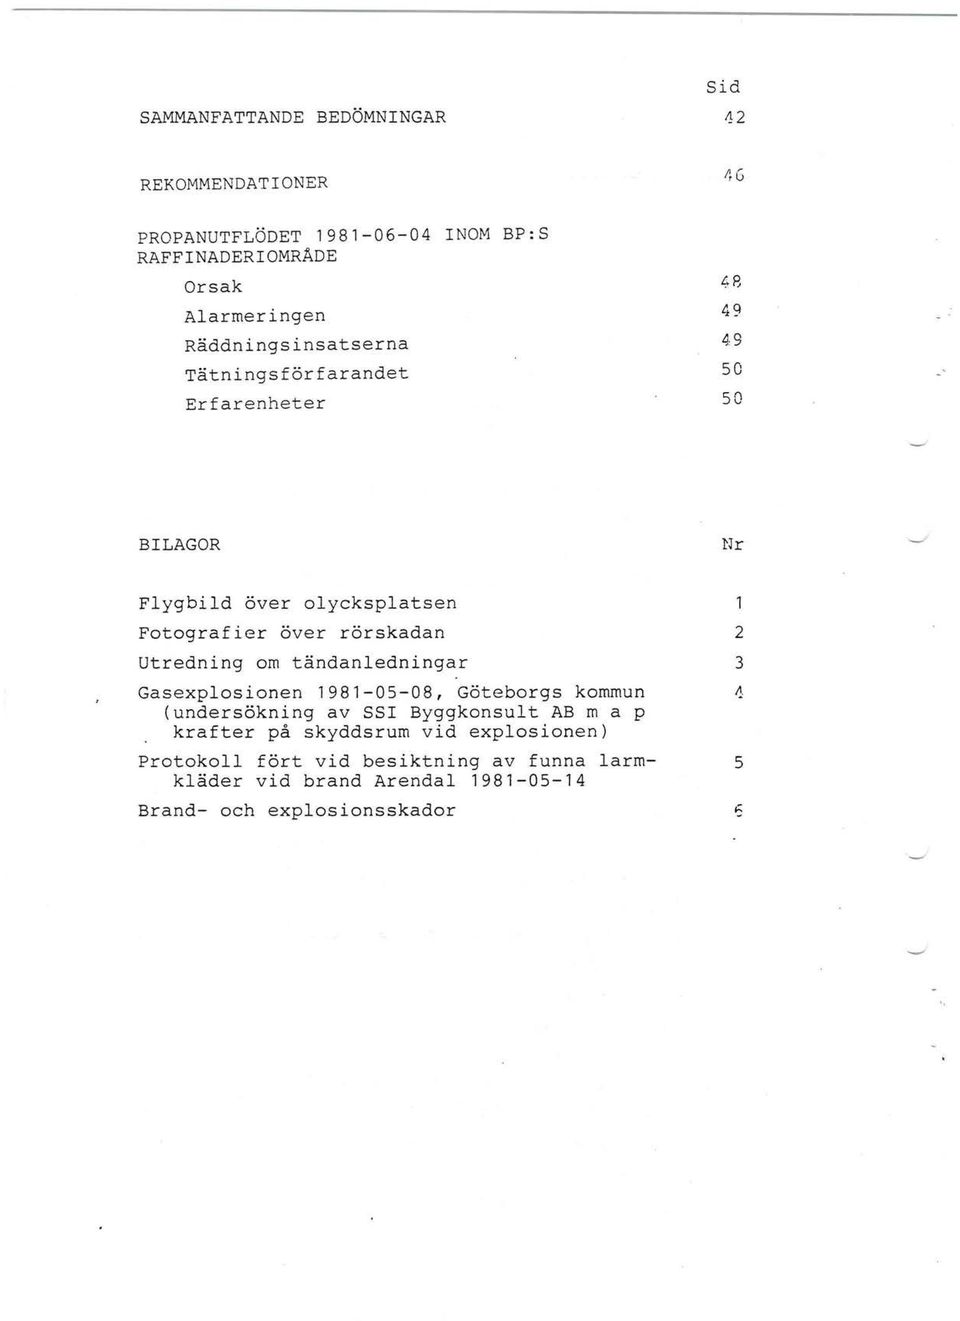 rörskadan 2 Utredning om tändanedningar 3 Gasexposionen 1981-05-08, Göteborgs kommun ~ (undersökning av SSI Byggkonsut AB m a p